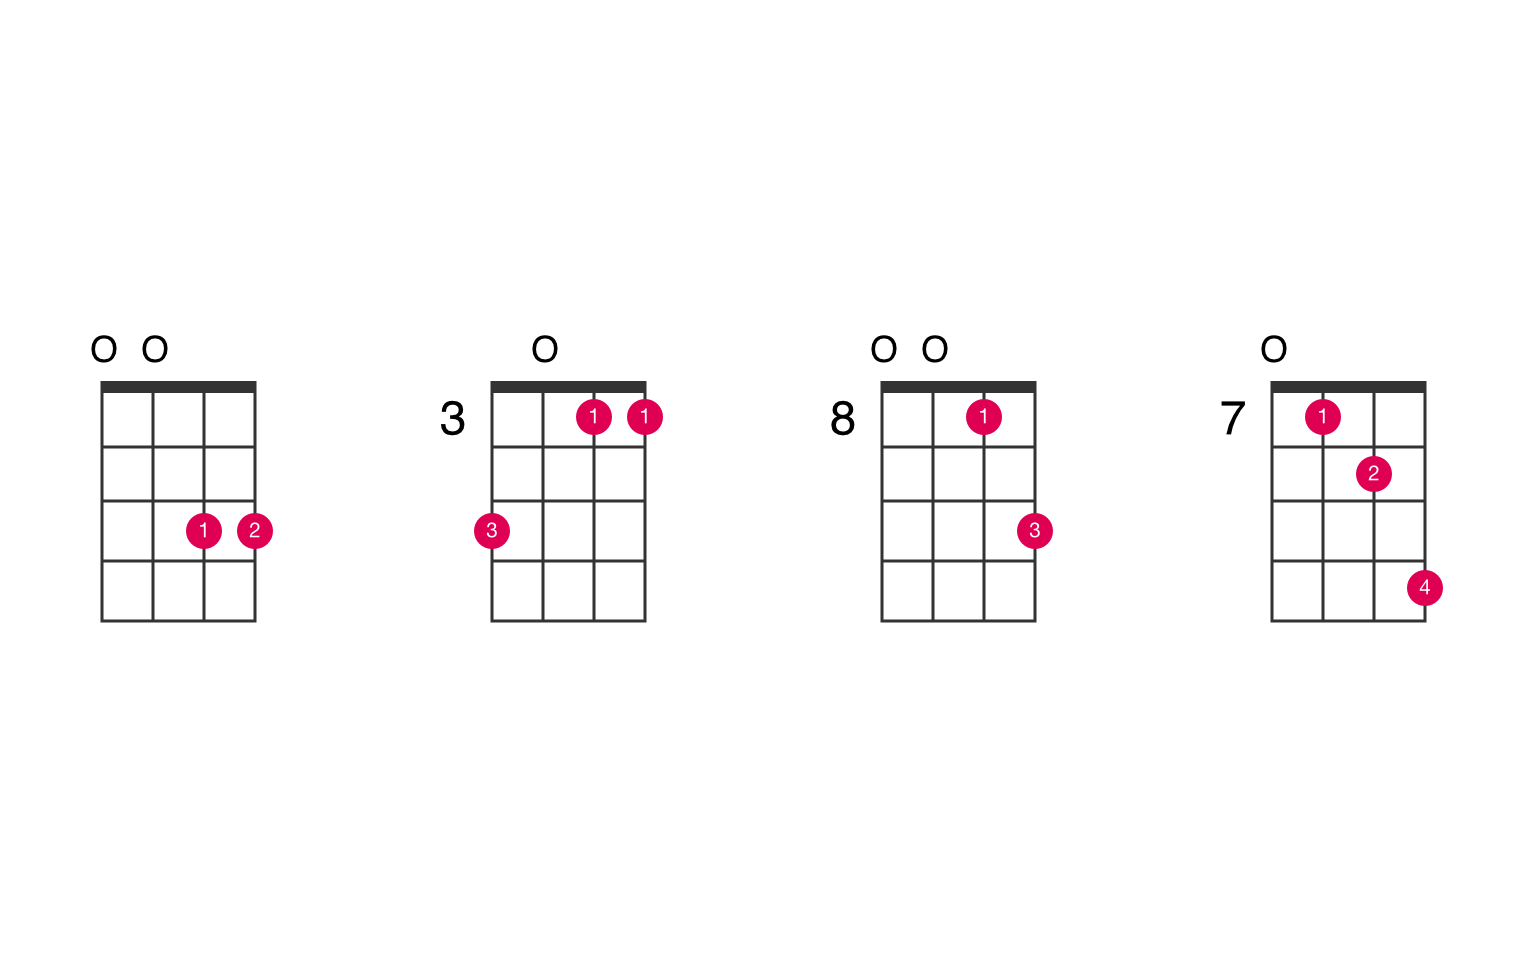 strukturelt nød Konsultere C5 ukulele chord - UkeLib Chords